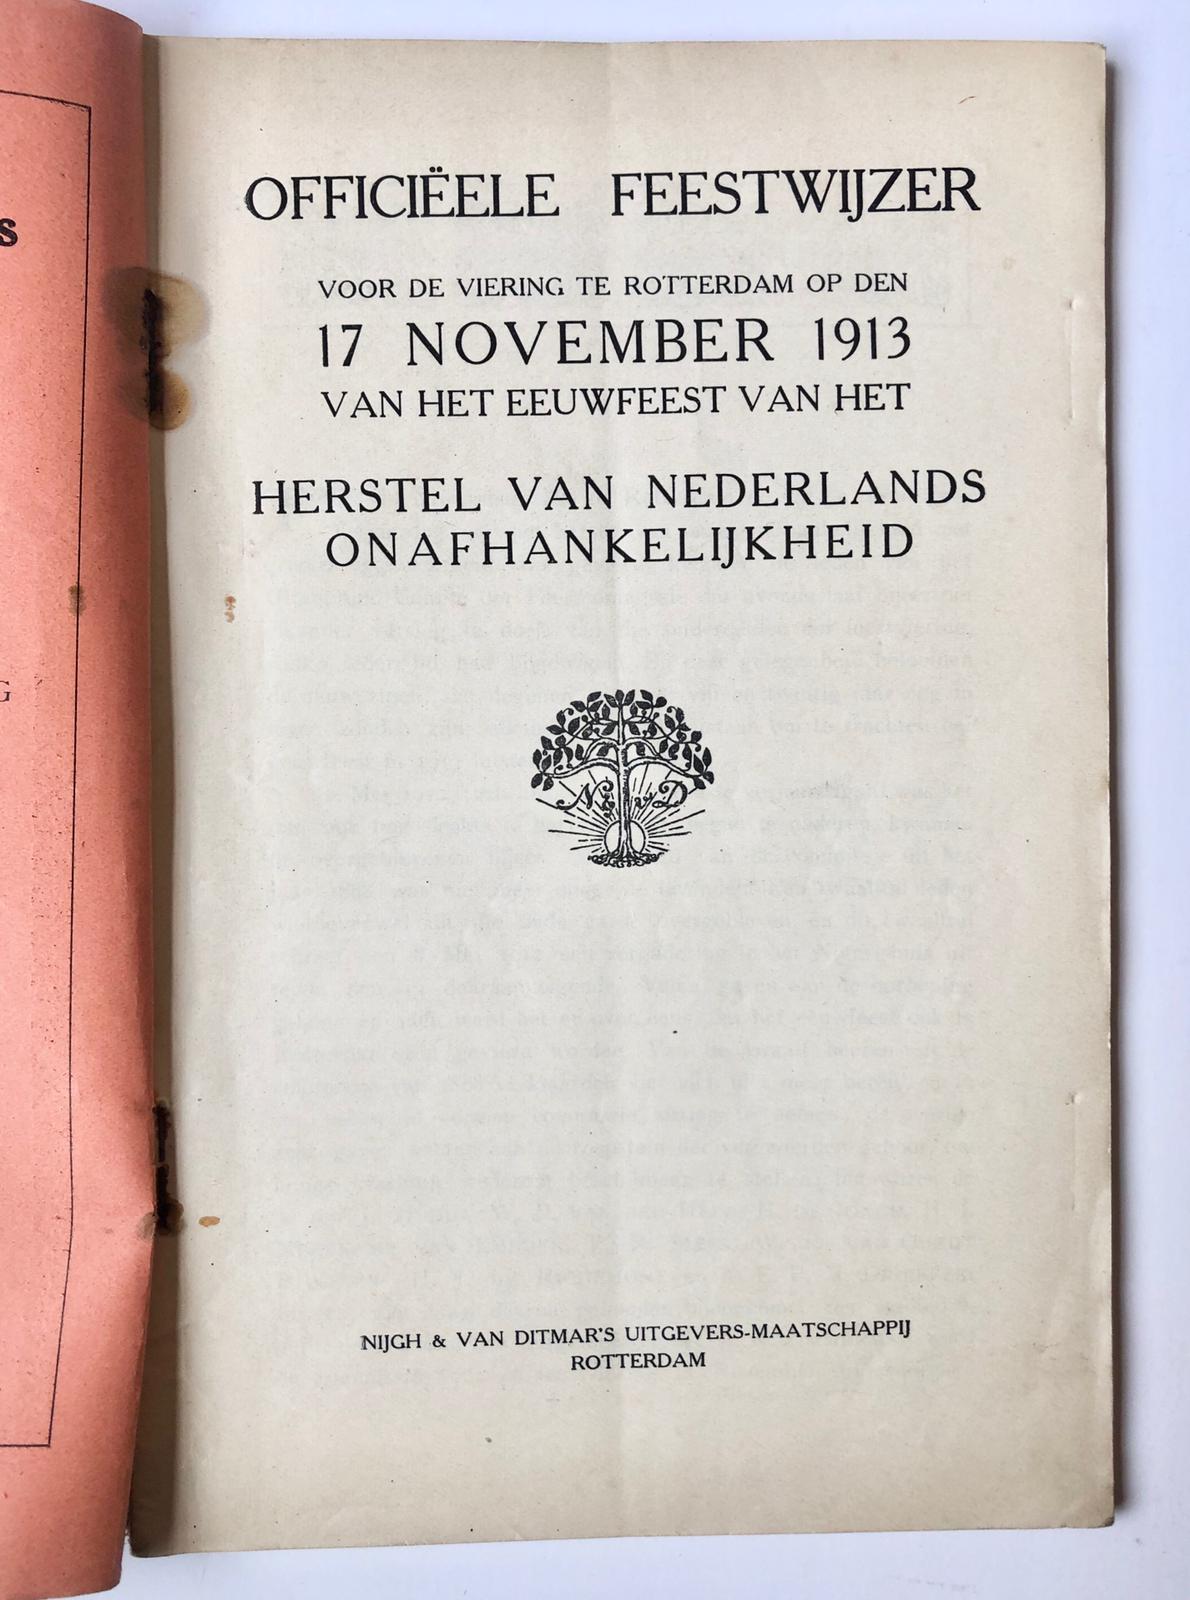 [Rotterdam] Officieele feestwijzer voor de viering te Rotterdam op 17 November 1913 van het eeuwfeest van het herstel van Neerlands onafhankelijkheid, Nijgh & van Ditmar’s uitgevers-maatschappij, Rotterdam, 74 pp.